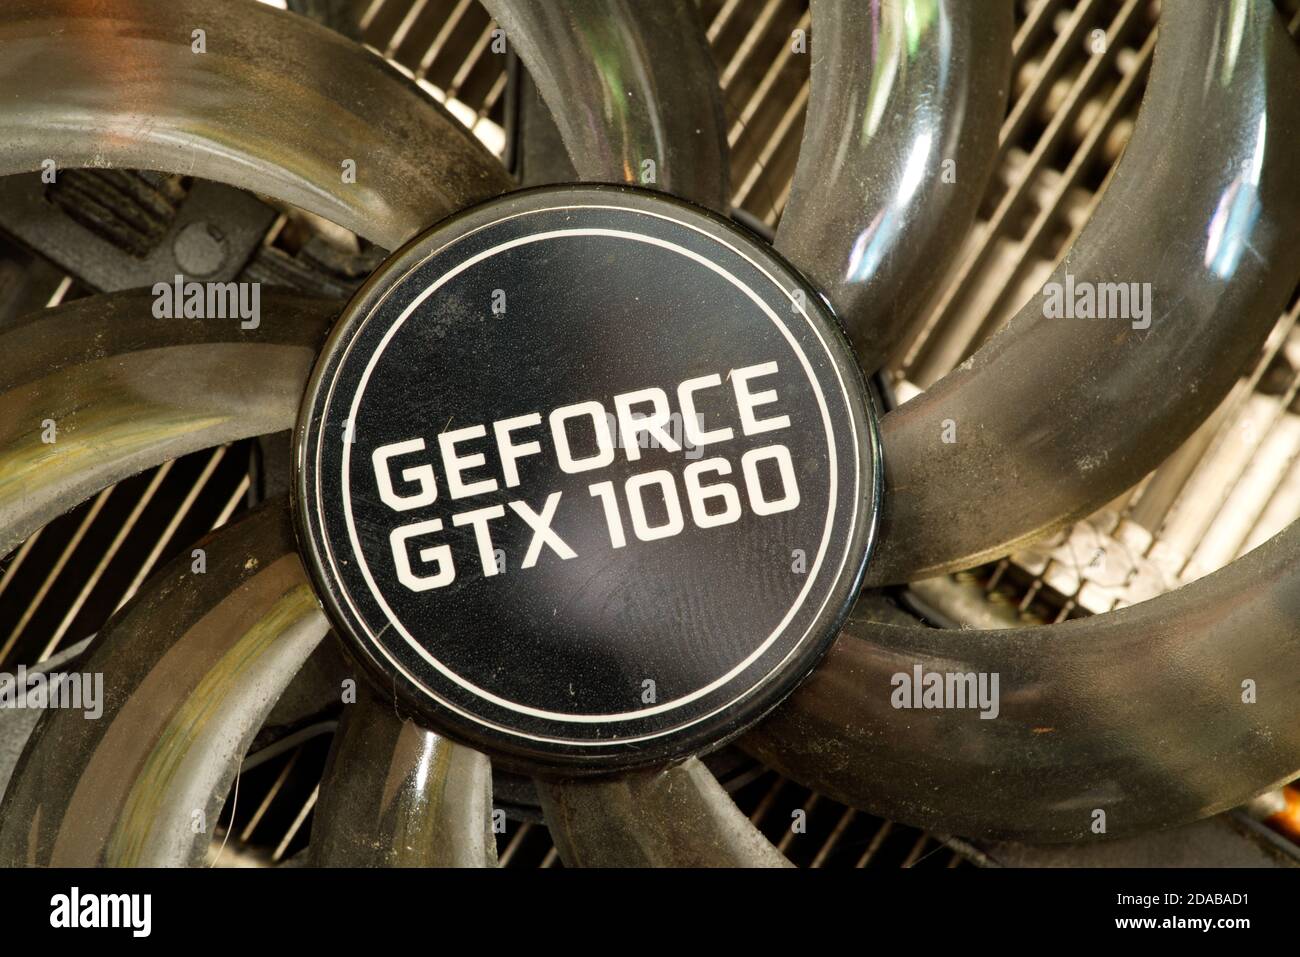 palit dual nvidia geforce gtx 1060 cooler close up Stock Photo - Alamy